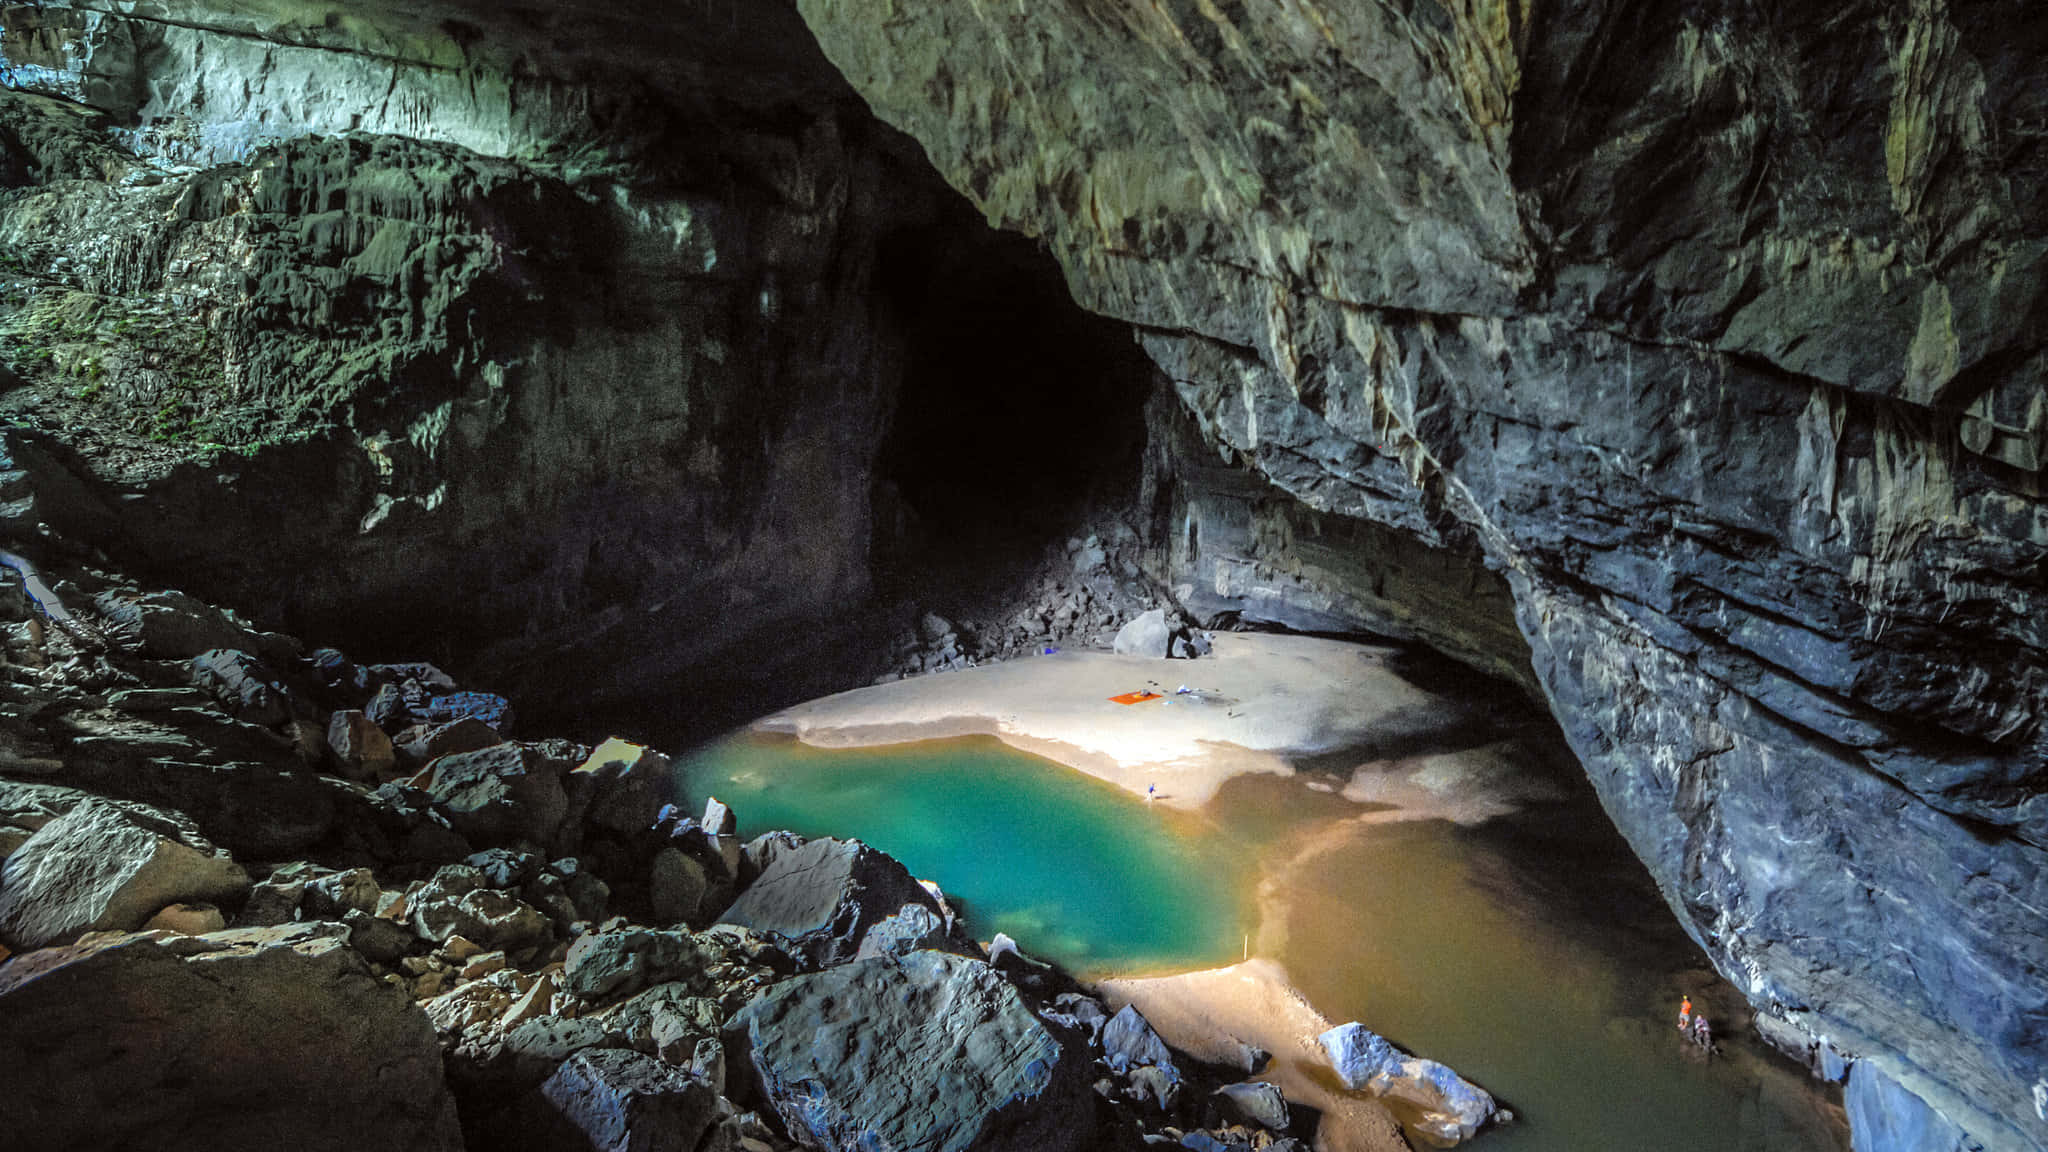 Stunning Underground Cave Landscape